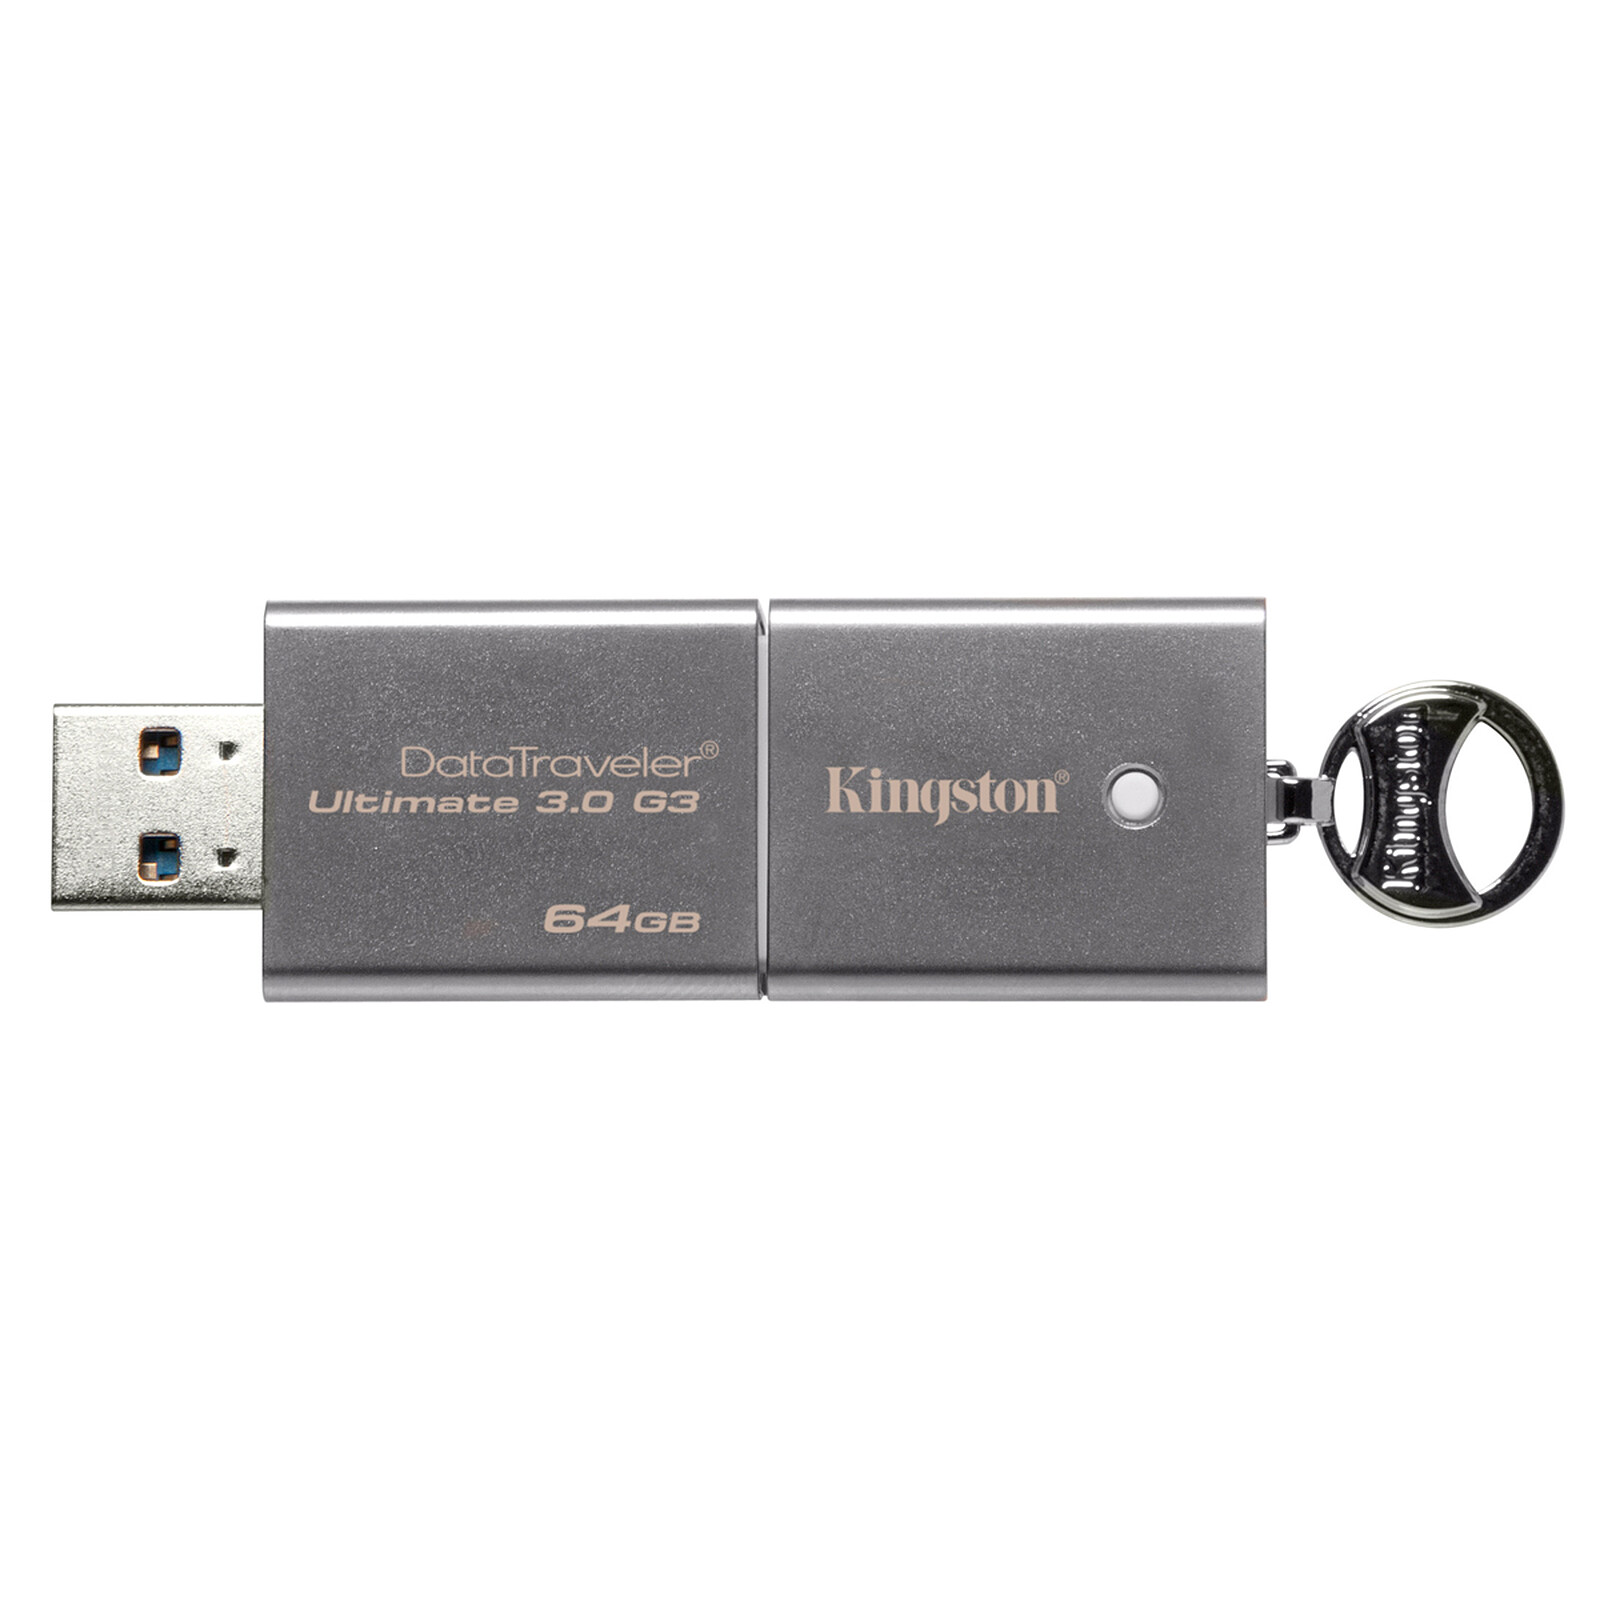 Kingston Kingston Datatraveler G3 Clé USB 64GB 100mb/S USB 3.0 Lecteur Flash 